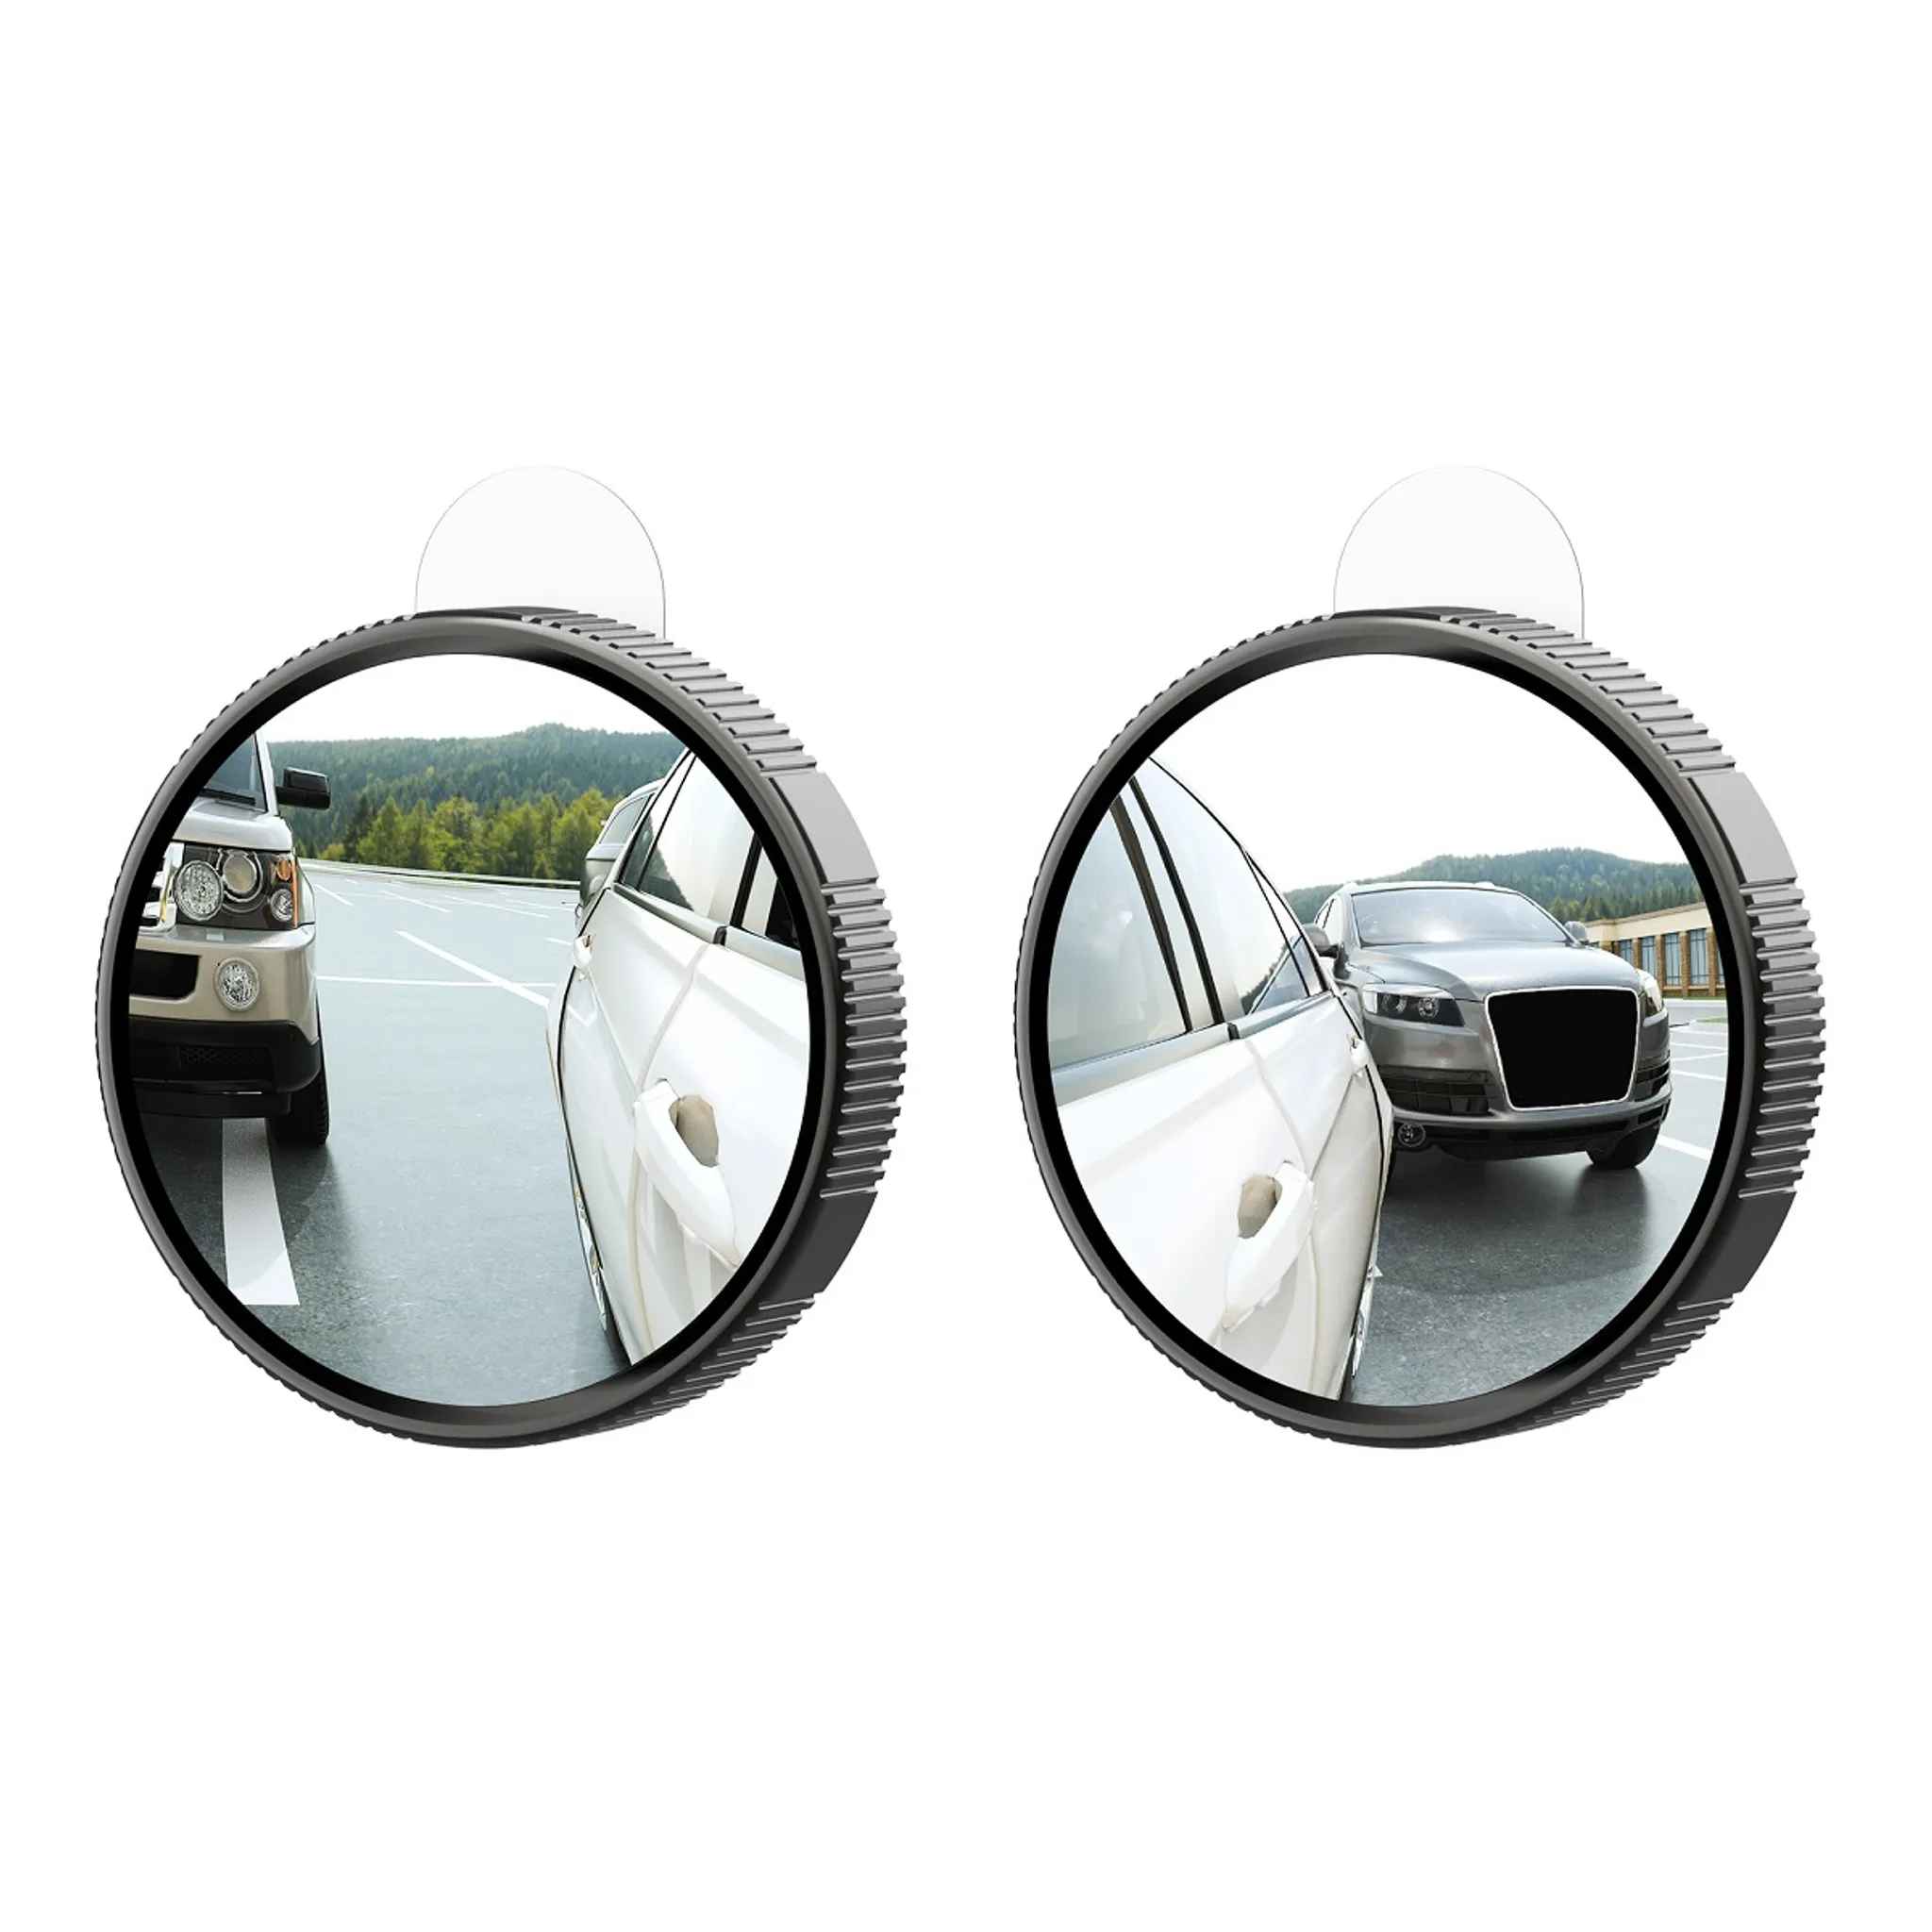 2 Stück Deluxe Caravanspiegel Spiegel Wohnwagenspiegel Aufsetzspiegel  Universal , 48,90 €